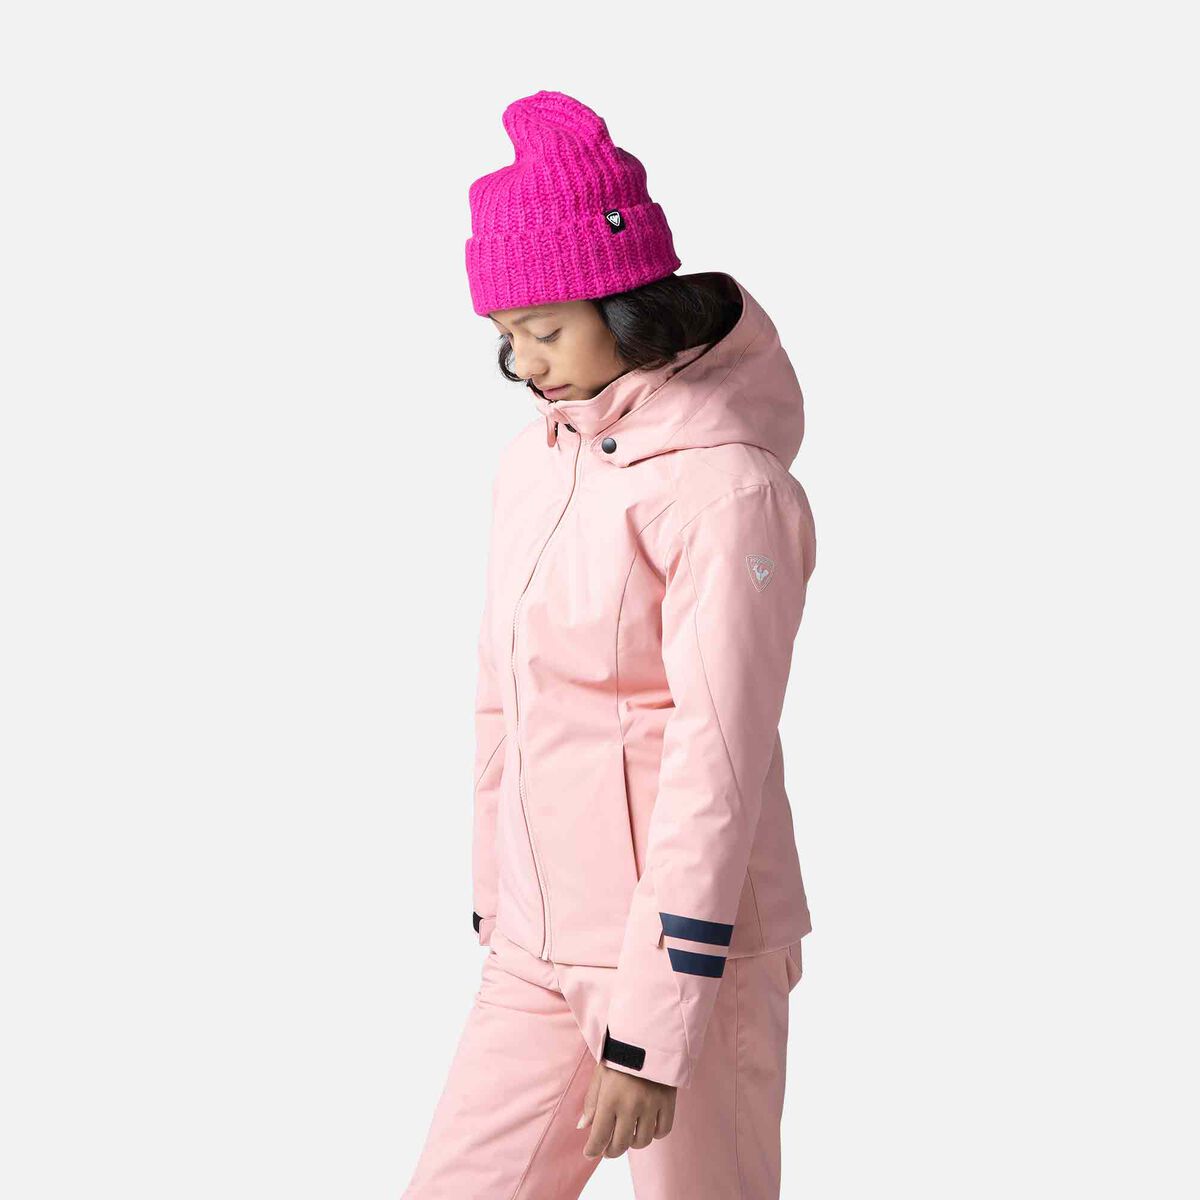 Veste ski enfant Rossignol Ski Jacket Enfant pink fuschia